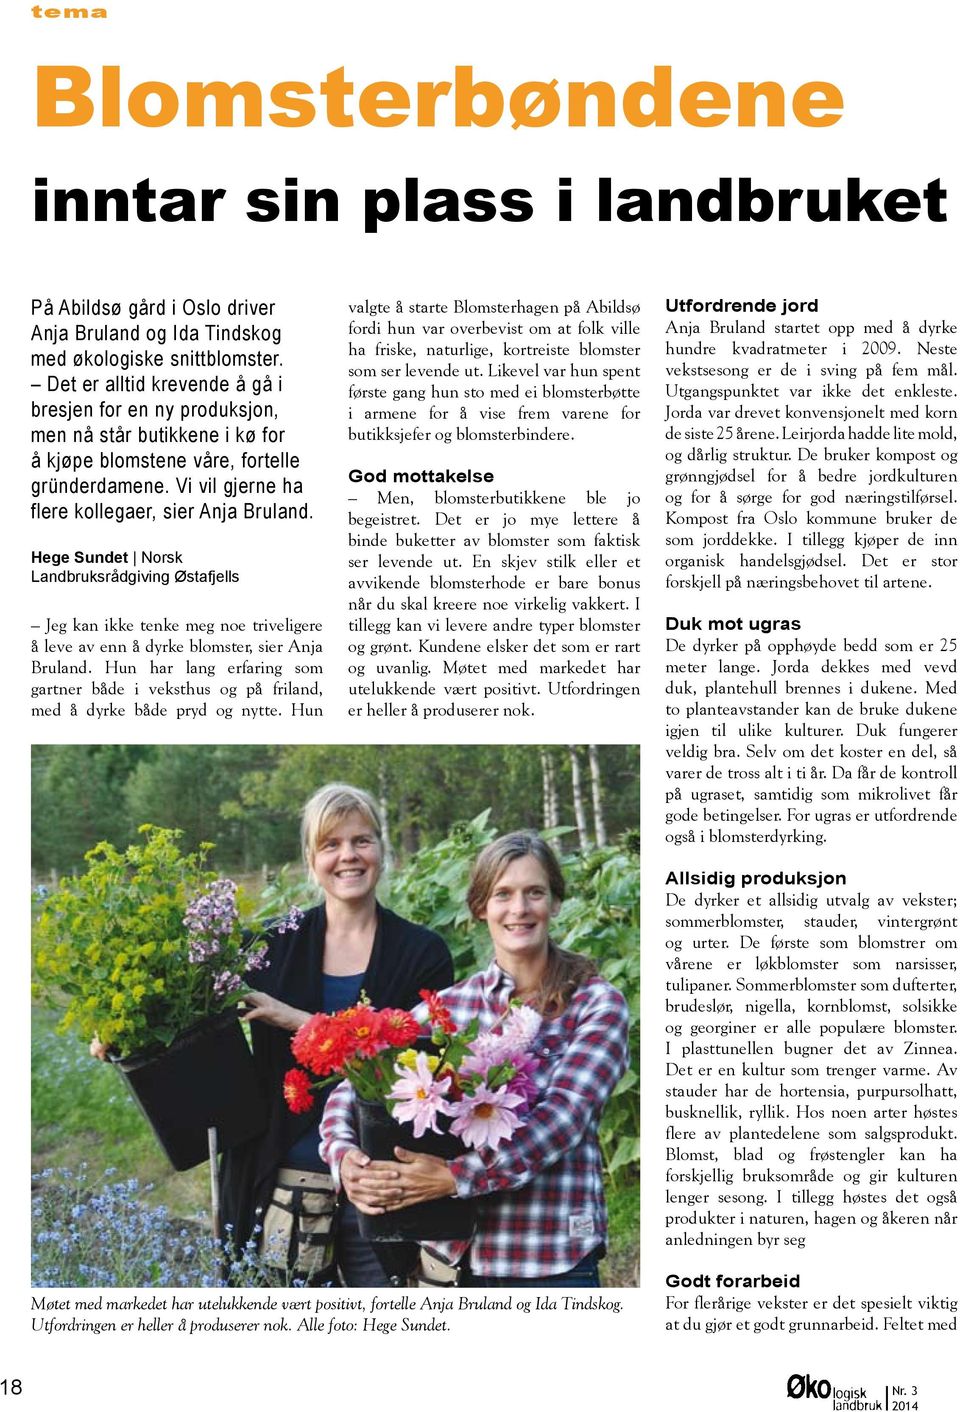 Hege Sundet Norsk Landbruksrådgiving Østafjells Jeg kan ikke tenke meg noe triveligere å leve av enn å dyrke blomster, sier Anja Bruland.